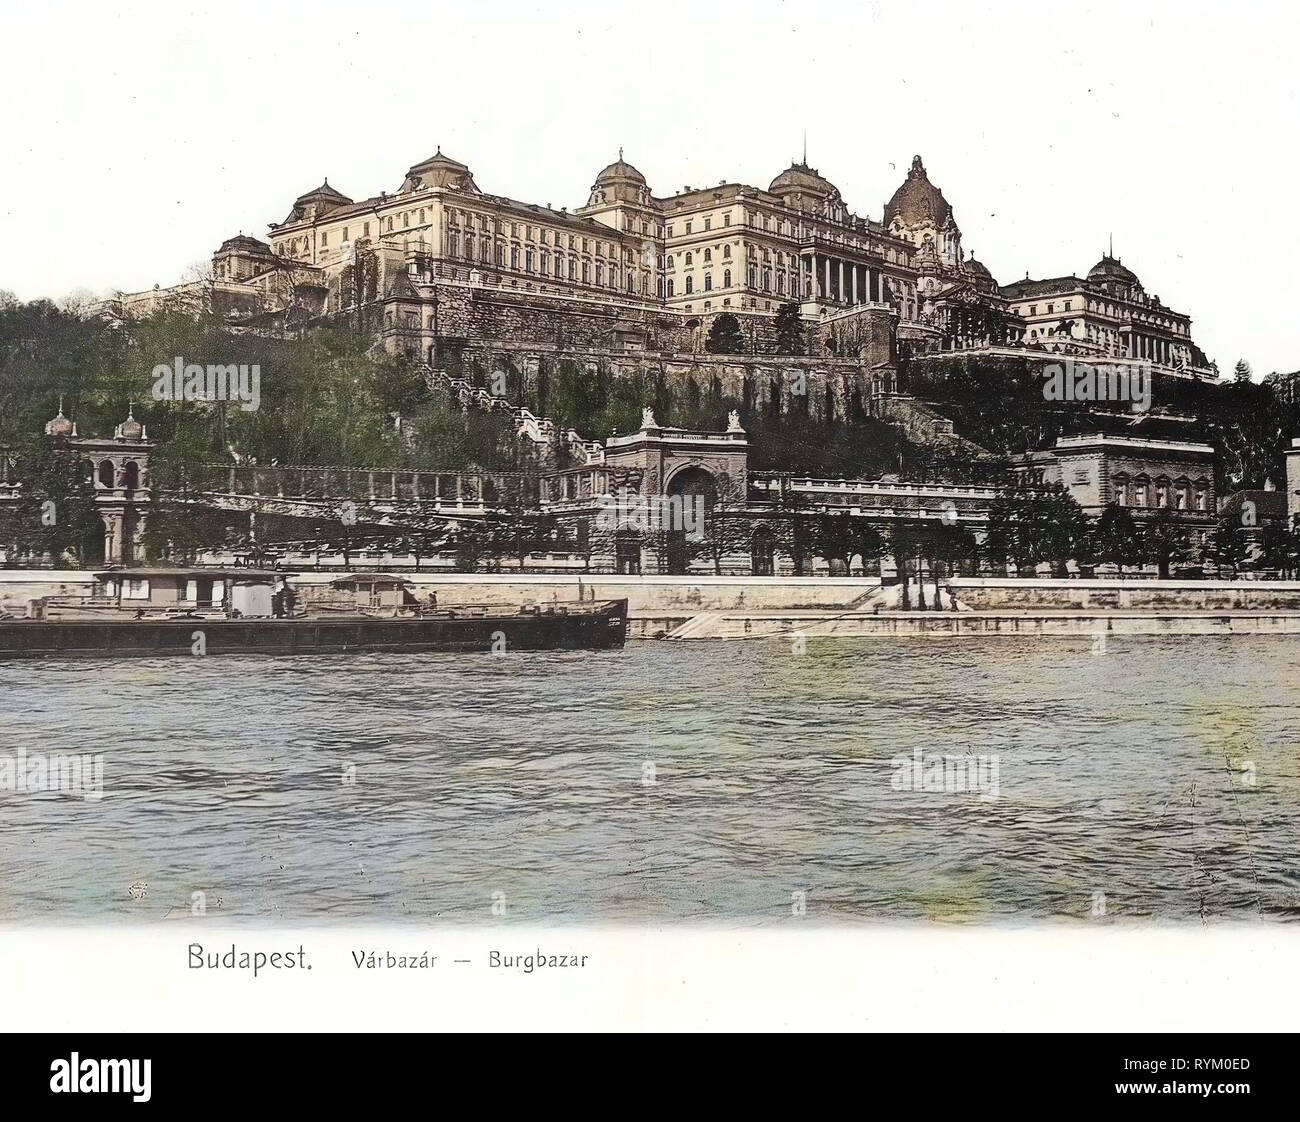 Vue sur le château de Buda du Danube, 1906, Budapest, Burgbazar mit Donau und Schiff, Hongrie Banque D'Images